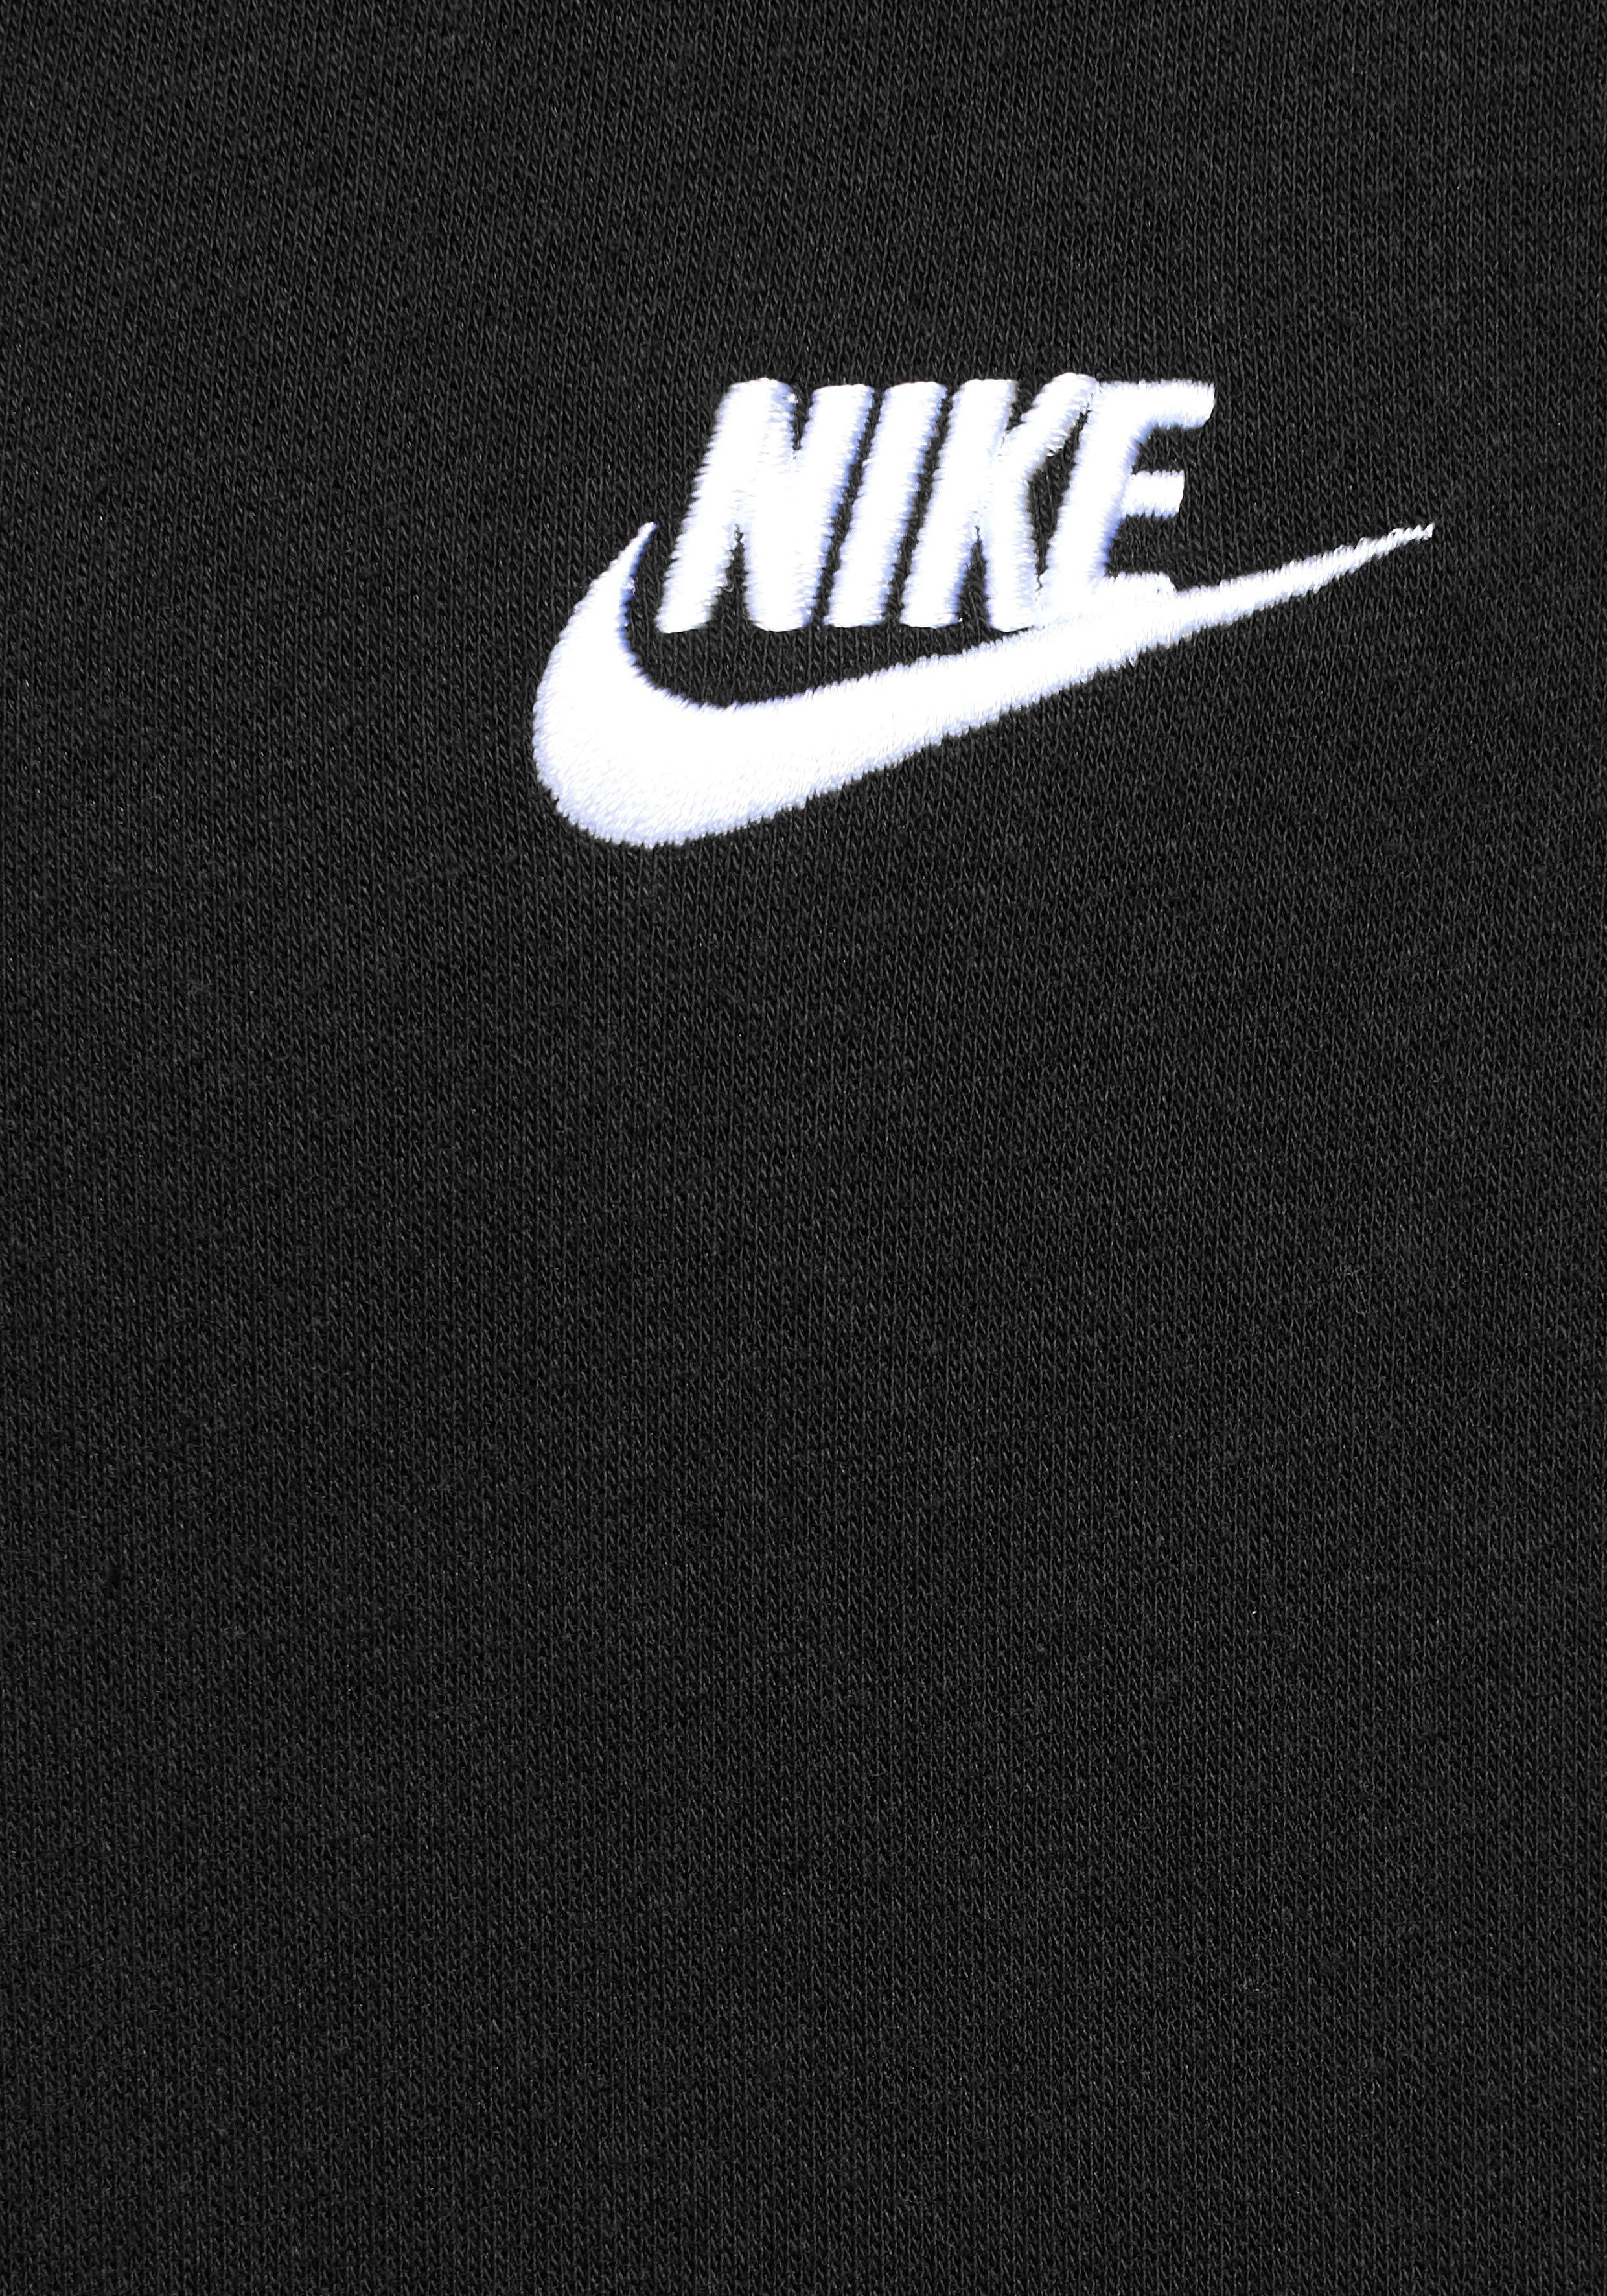 Hoodie Fleece Nike Sportswear schwarz Full-Zip Sweatjacke Club Men's